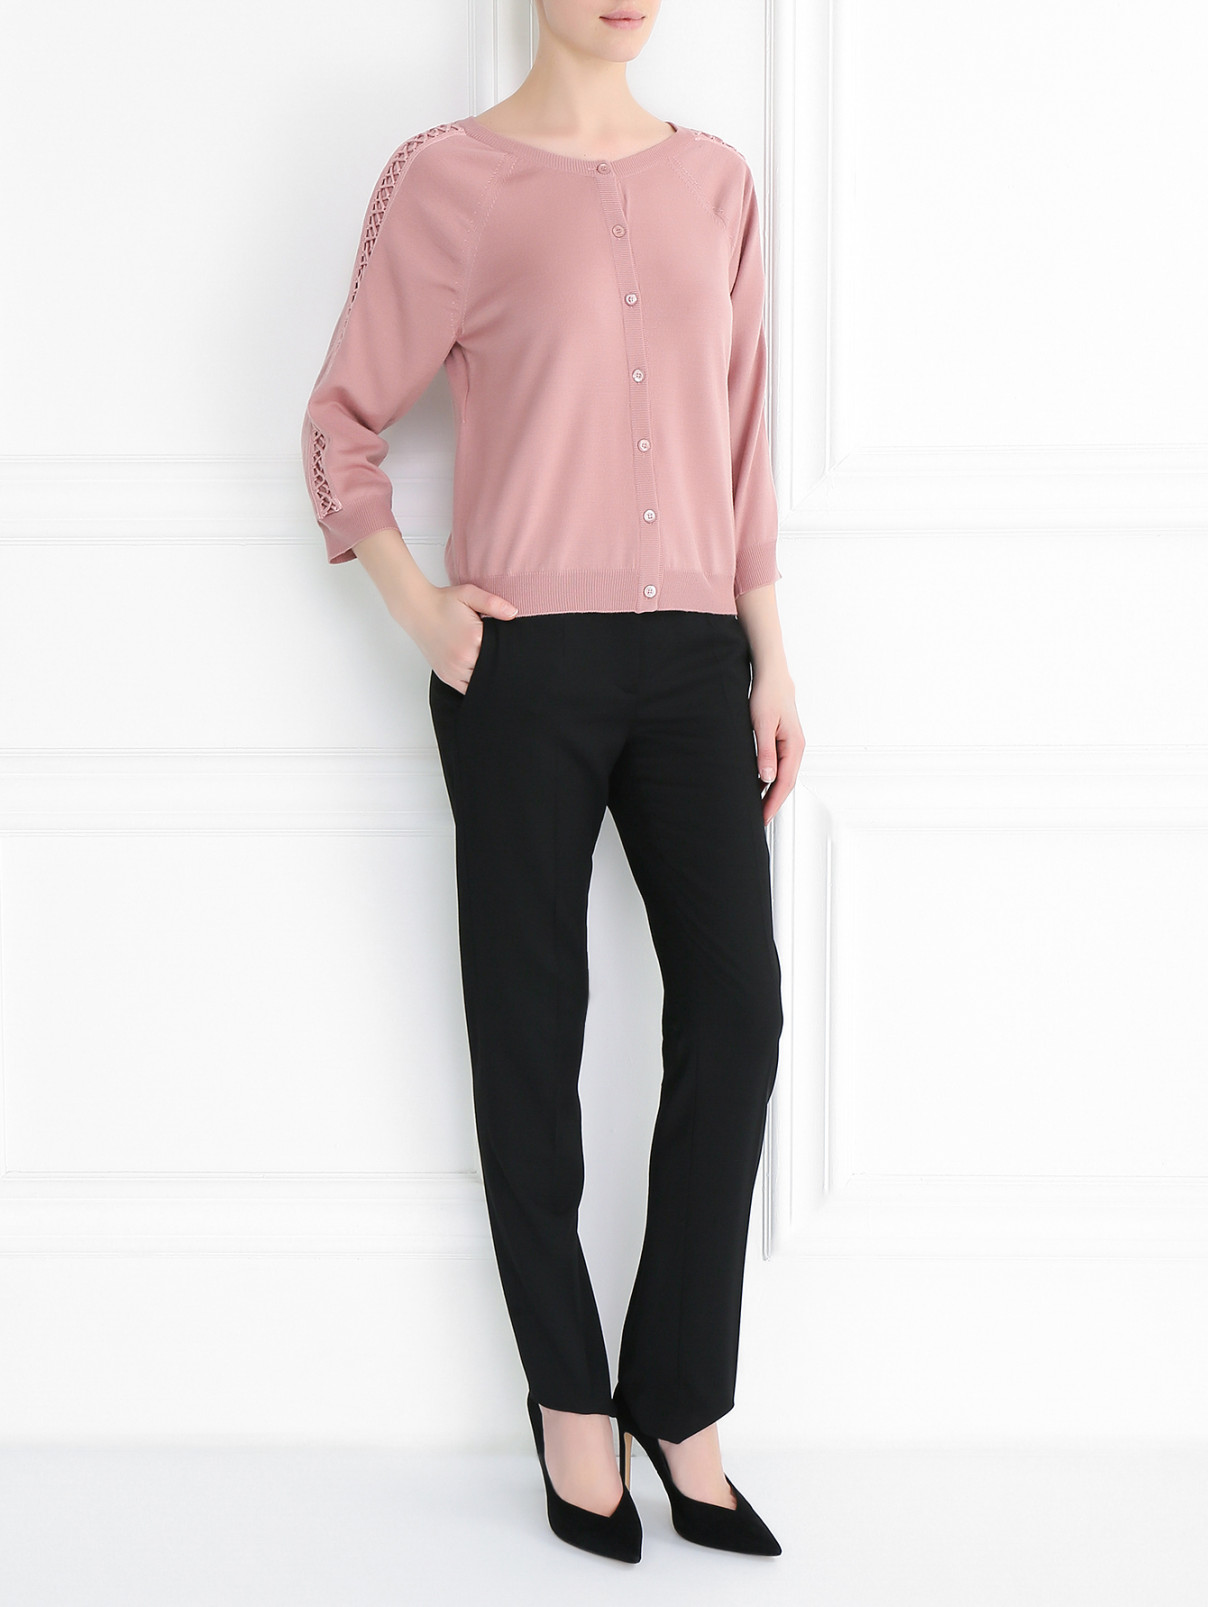 Кардиган из шерсти с шнуровкой на рукавах Moschino Couture  –  Модель Общий вид  – Цвет:  Розовый